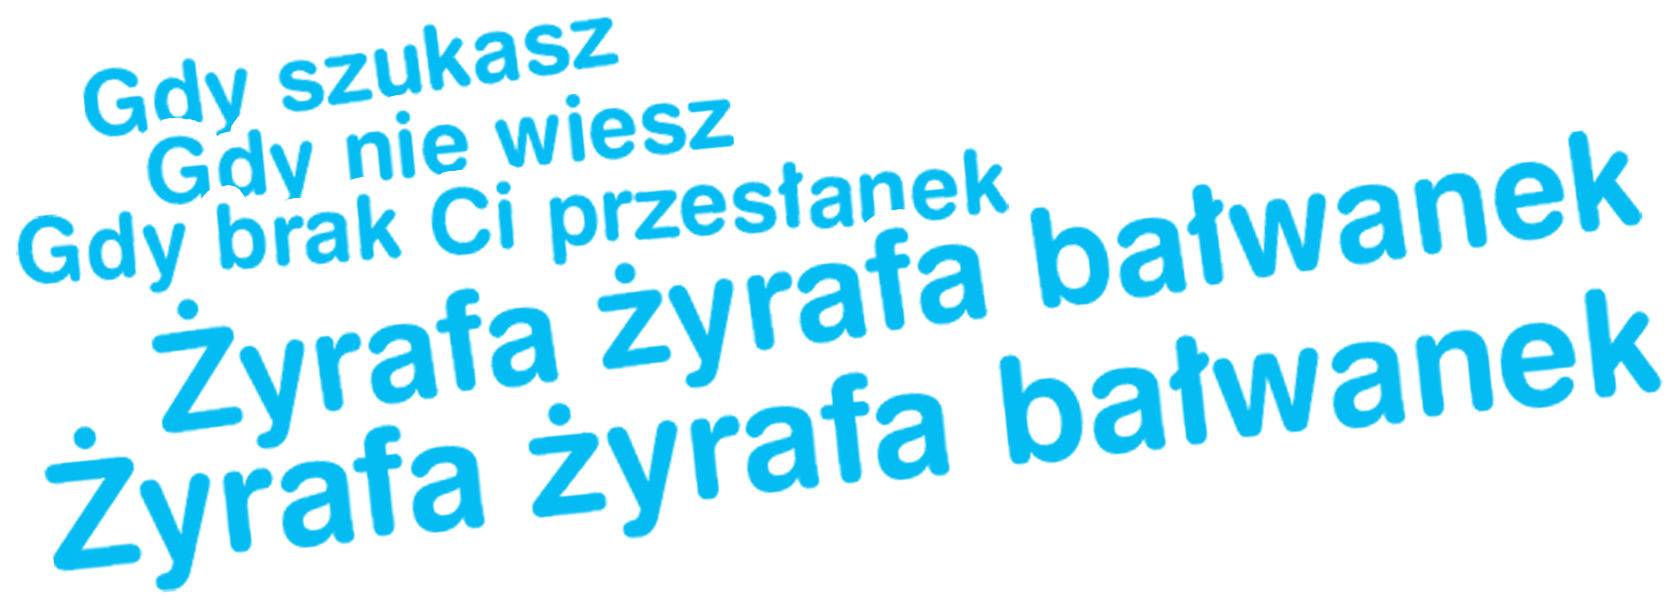 hasło reklamowe - Eniro Polska